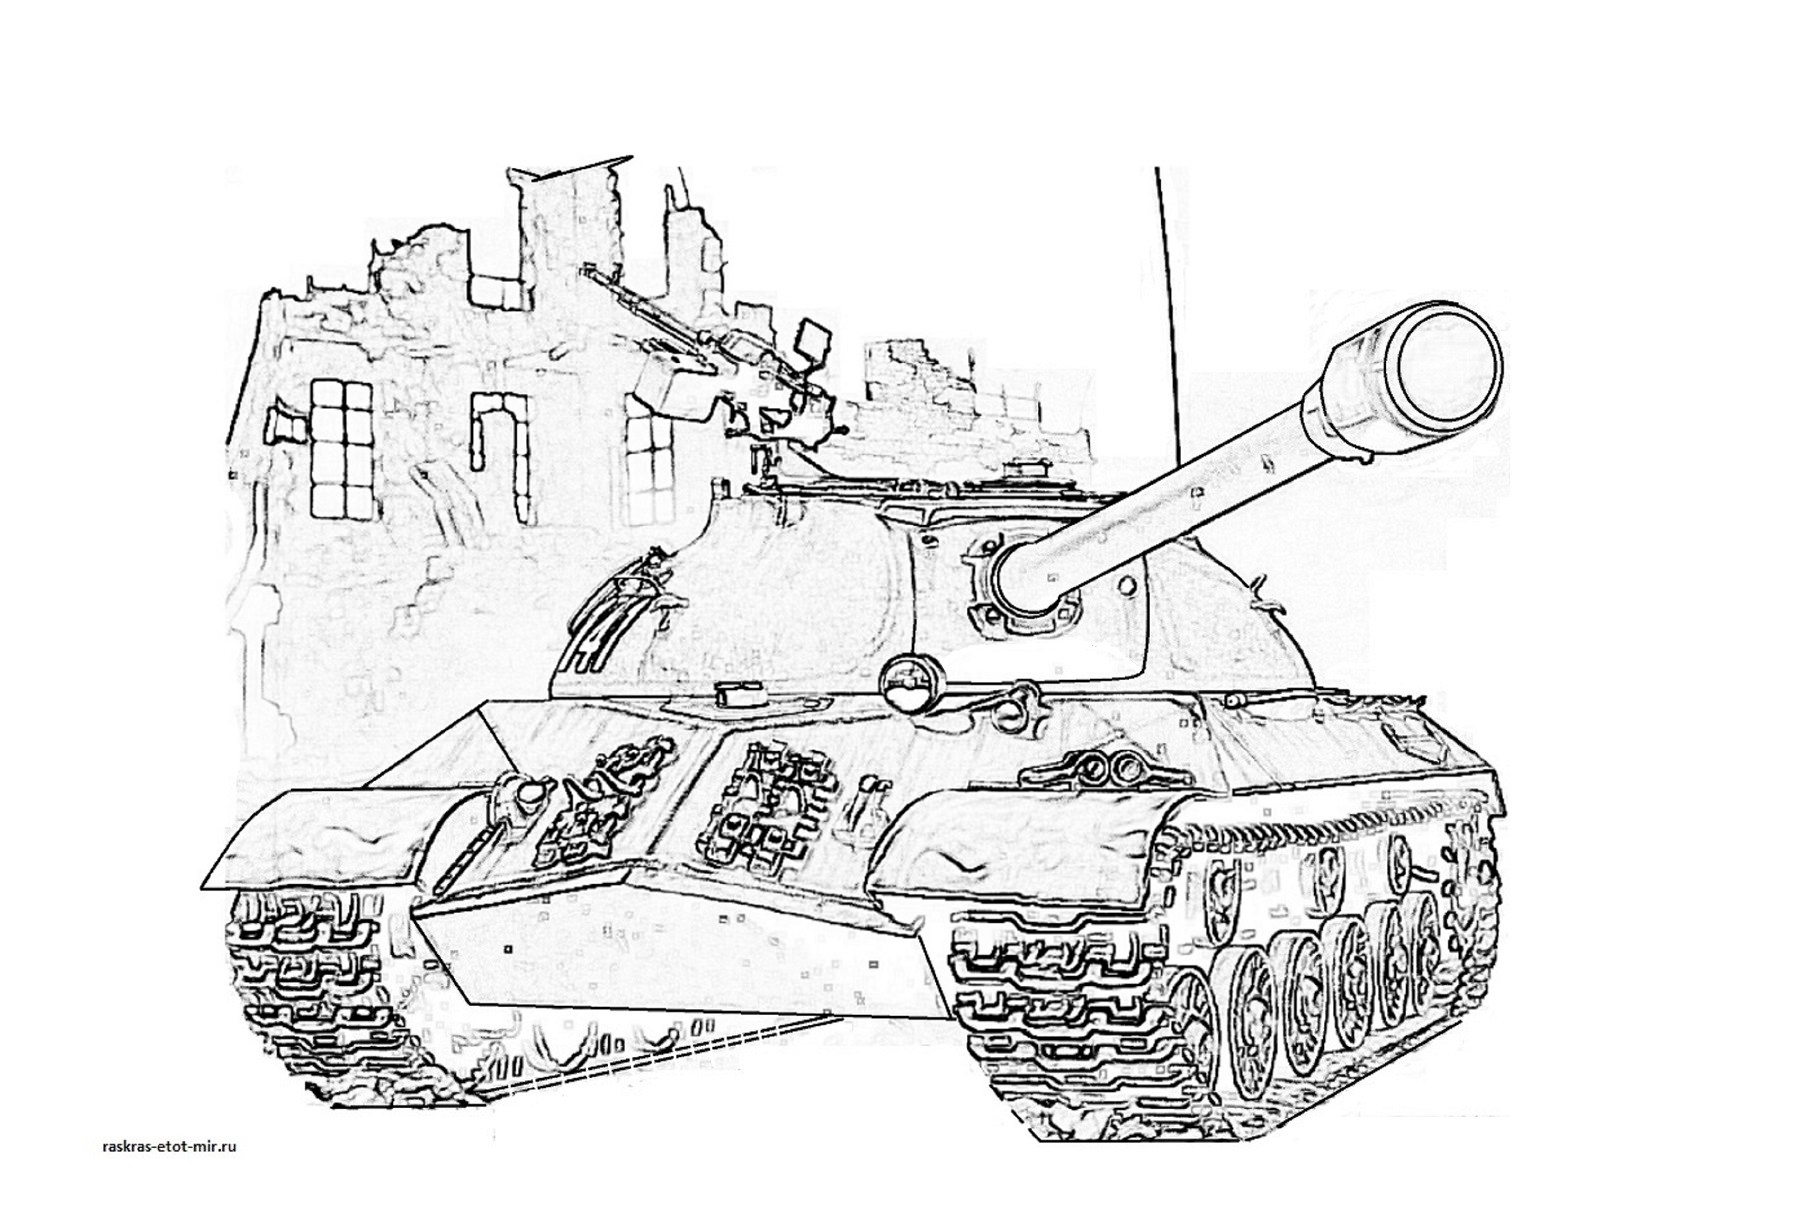 Шаблон ис. Раскраска танка ИС 2. Танк ИС 3 раскраска. Танки из ворлд оф танк раскраски. Раскраски танков World of Tanks т34.